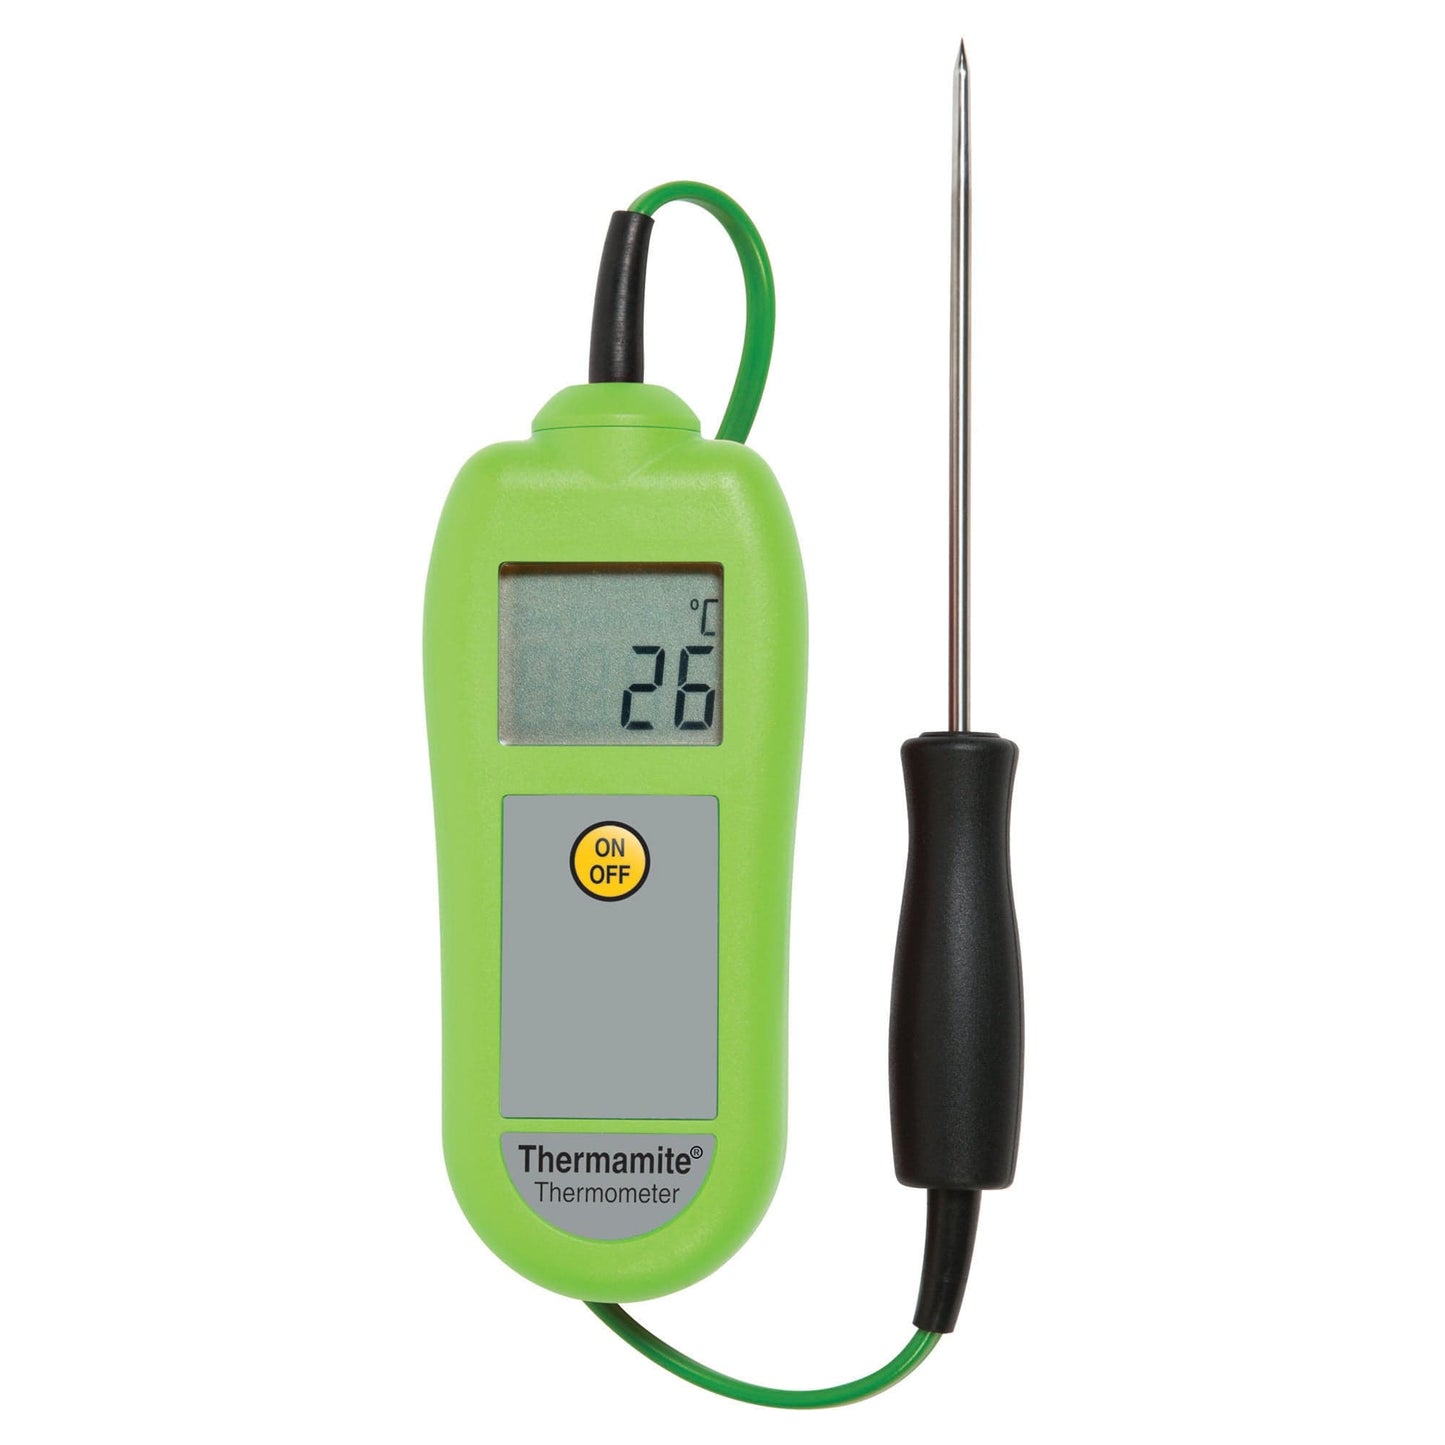 un Thermomètre numérique vert Thermamite avec sonde alimentaire de Thermometre.fr sur fond blanc.